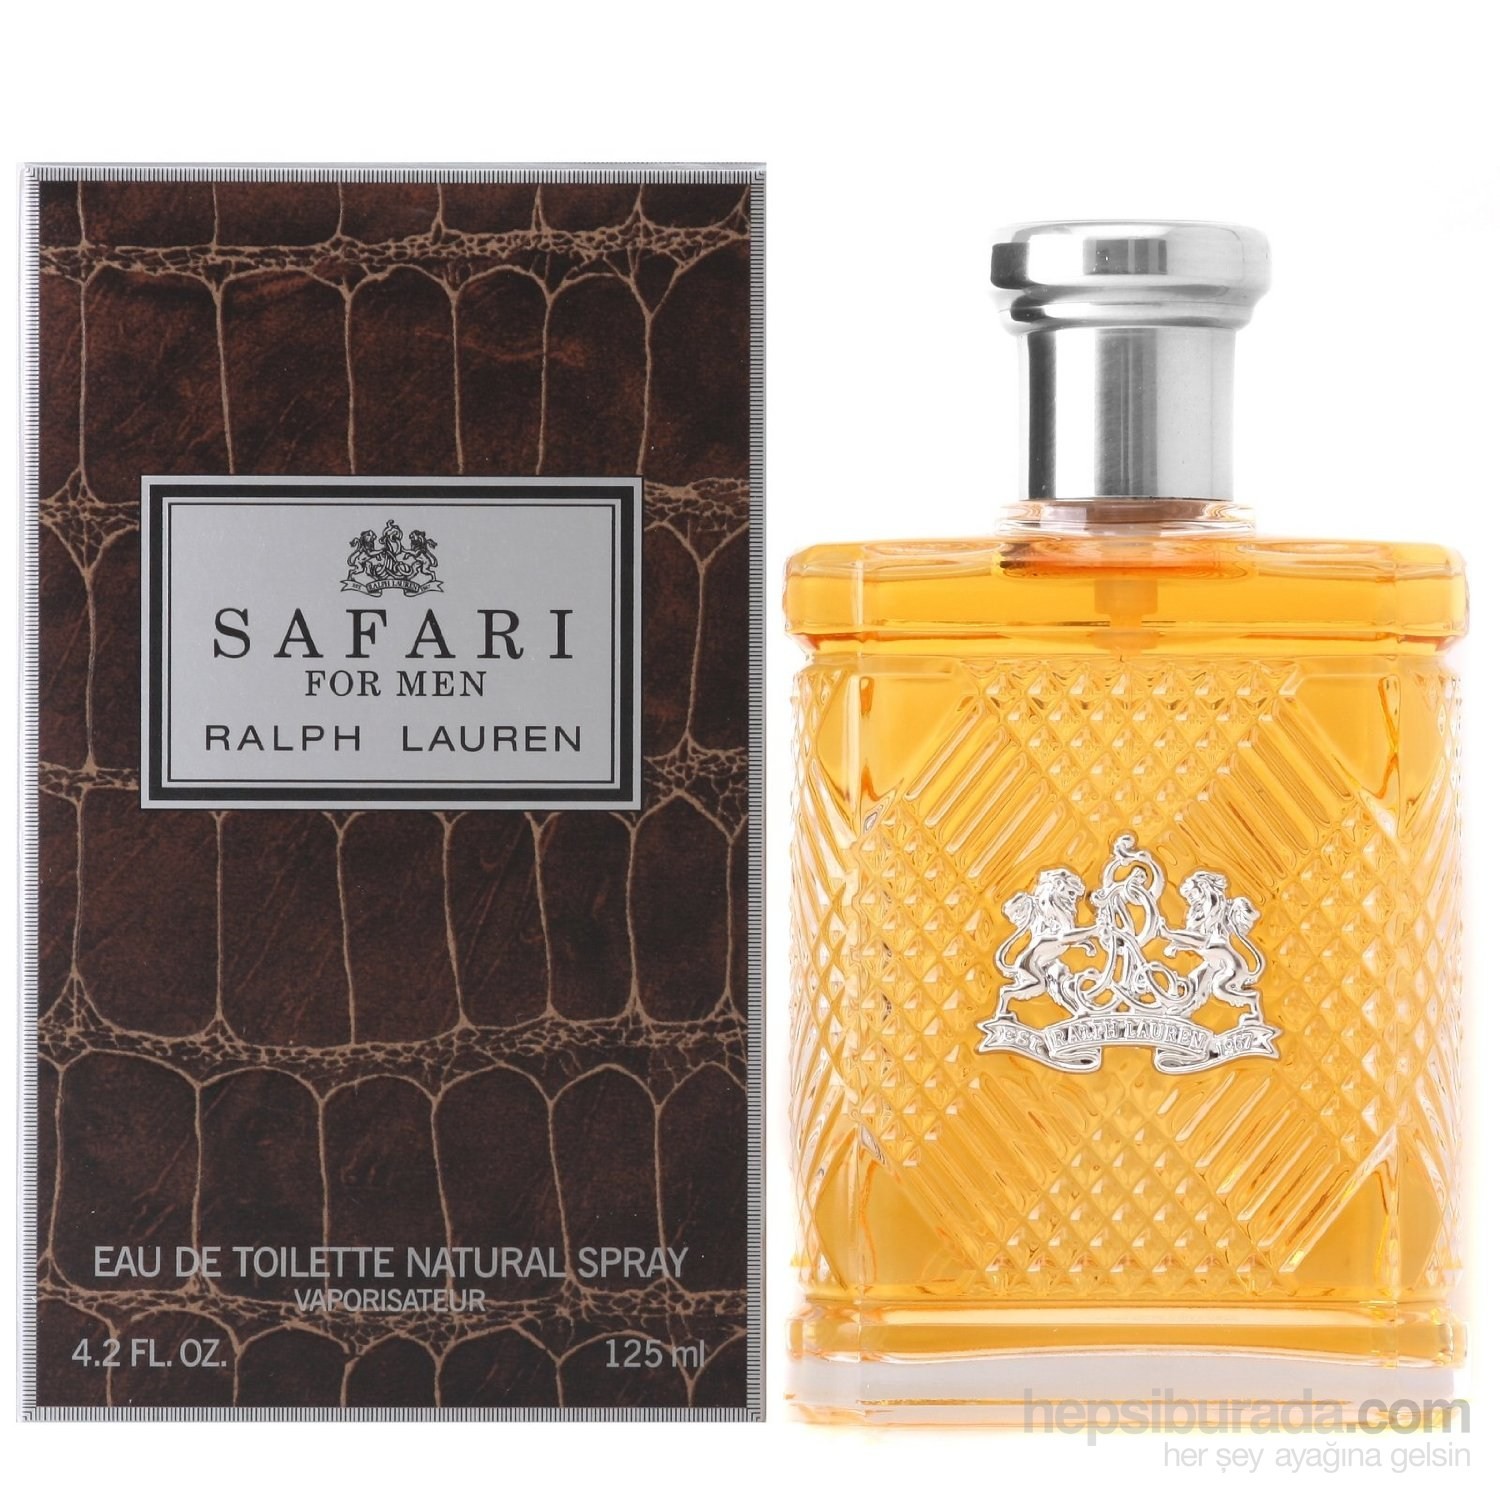 safari perfume price in qatar